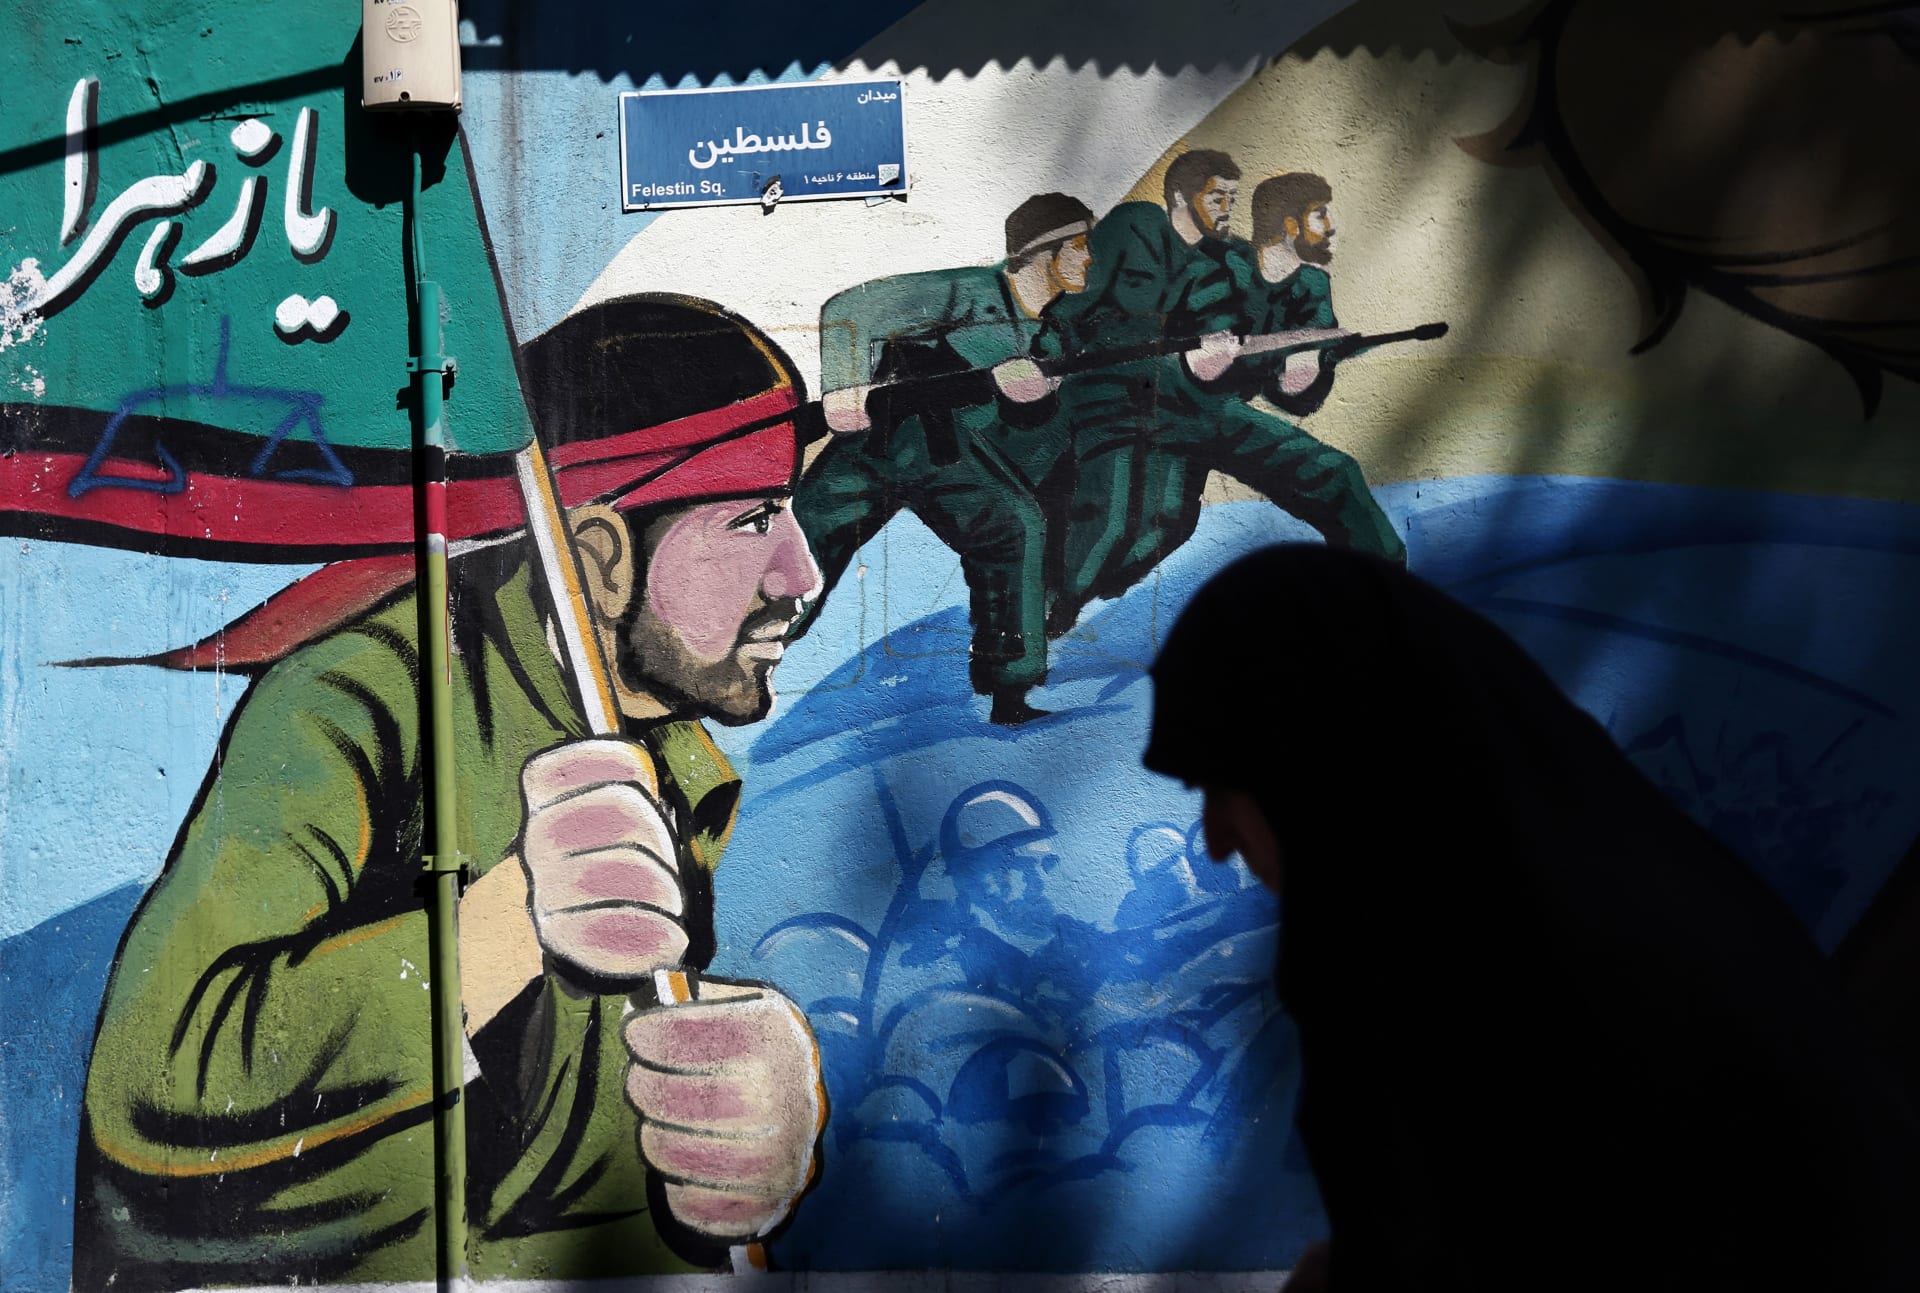 إيران تتصل بقادة "حماس" و"الجهاد" وتطالب بتشكيل قوة لحماية القدس